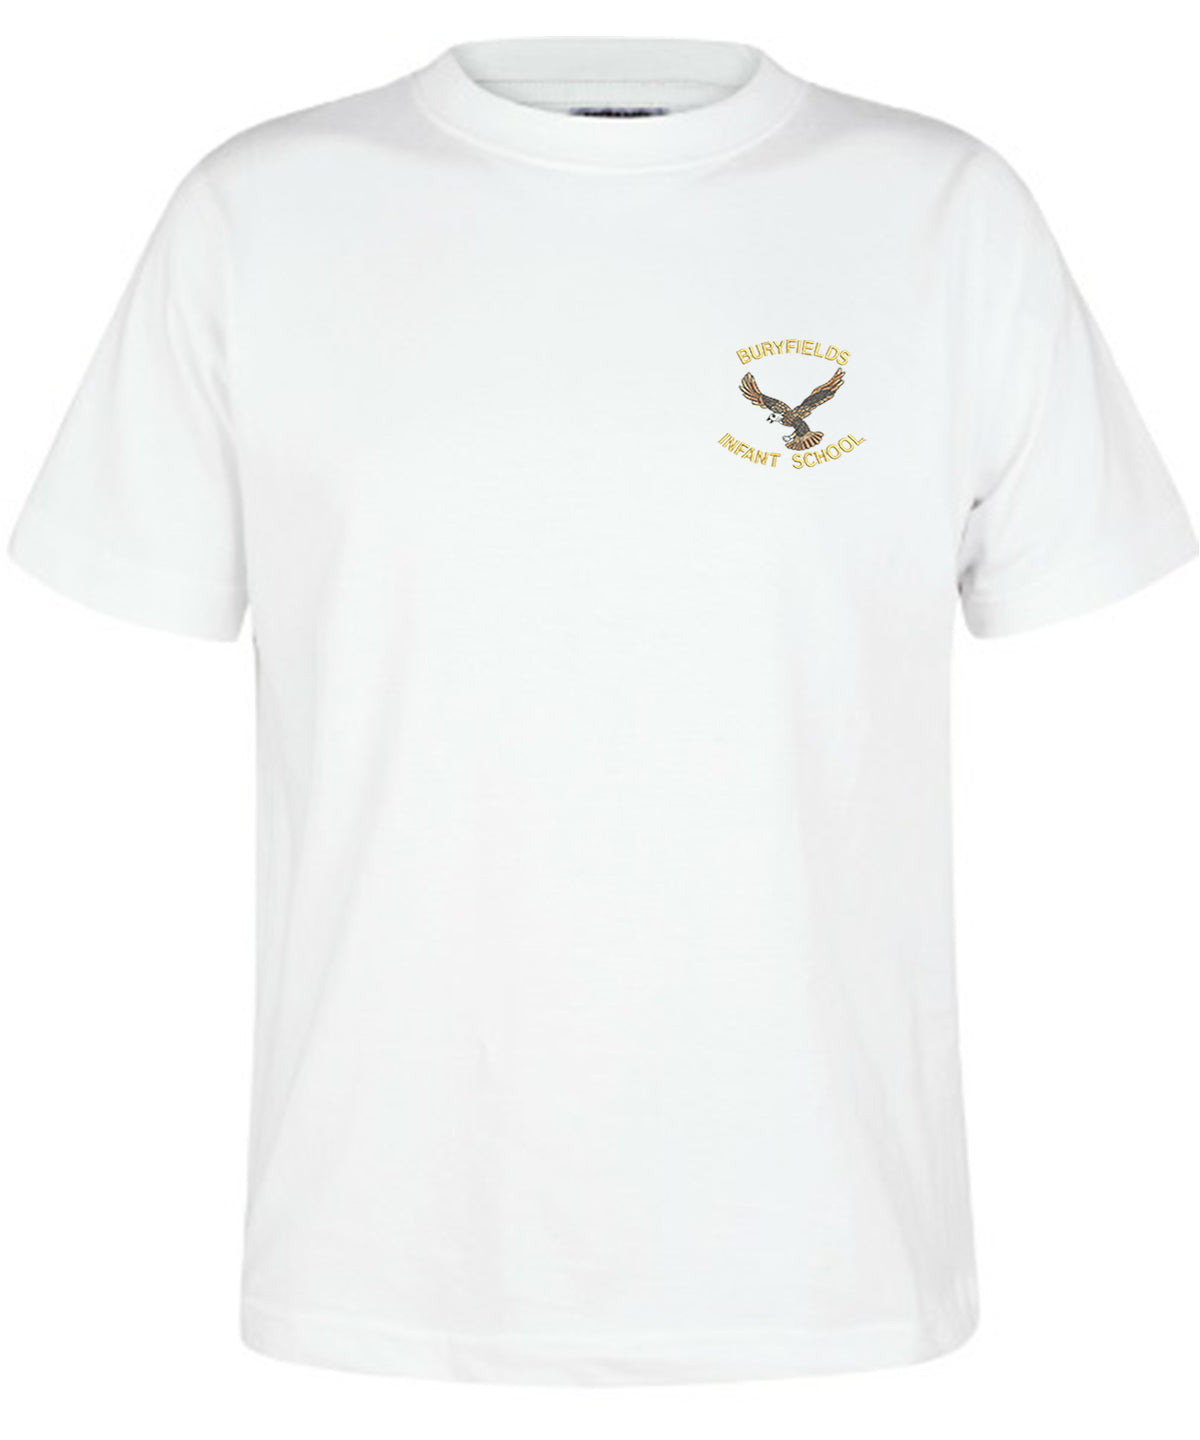 Buryfields Infant  School - Unisex Cotton T-Shirt - School Uniform Shop